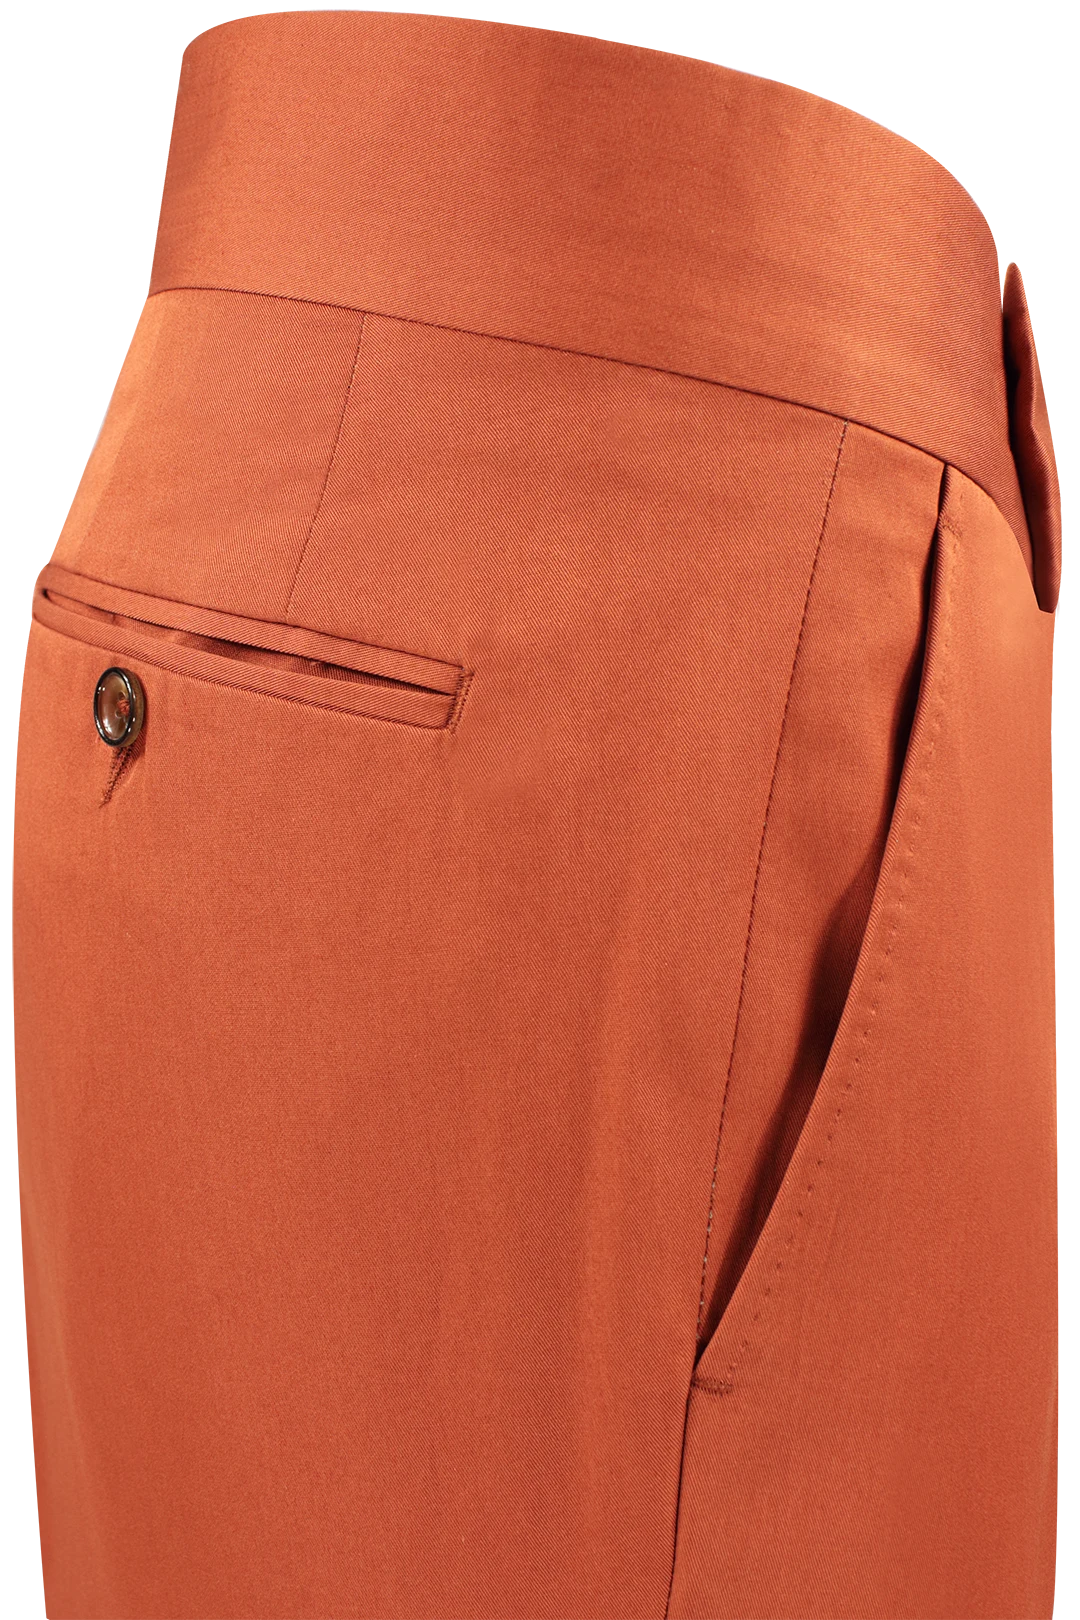 Pantalone con cinta sartoriale in cotone color coccio lato